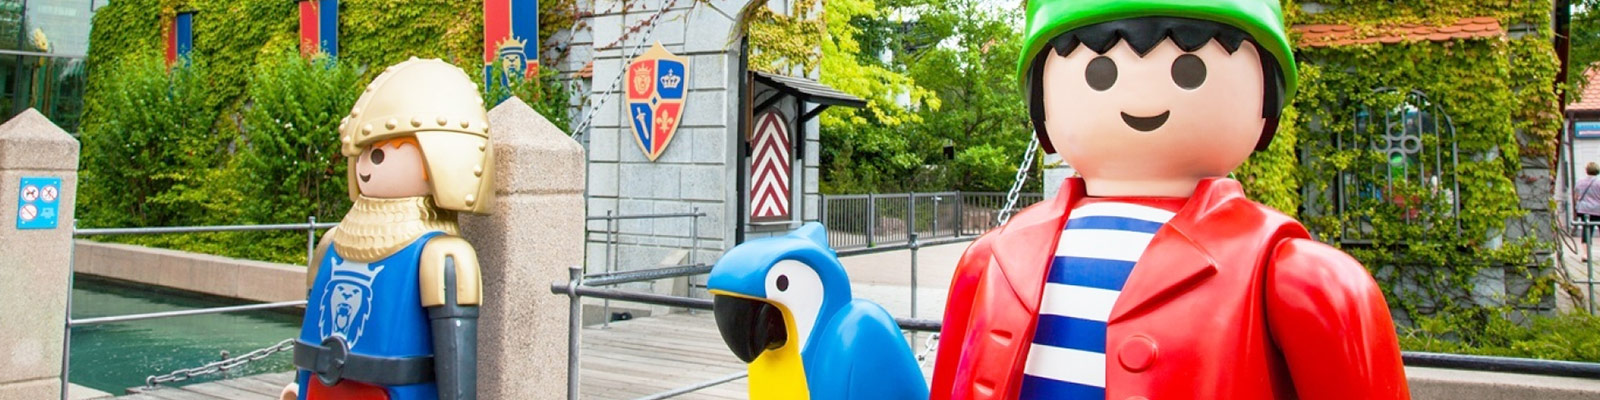 Especialidad secuestrar carga Playmobil Fun Park Alemania - Viajes El Corte Inglés